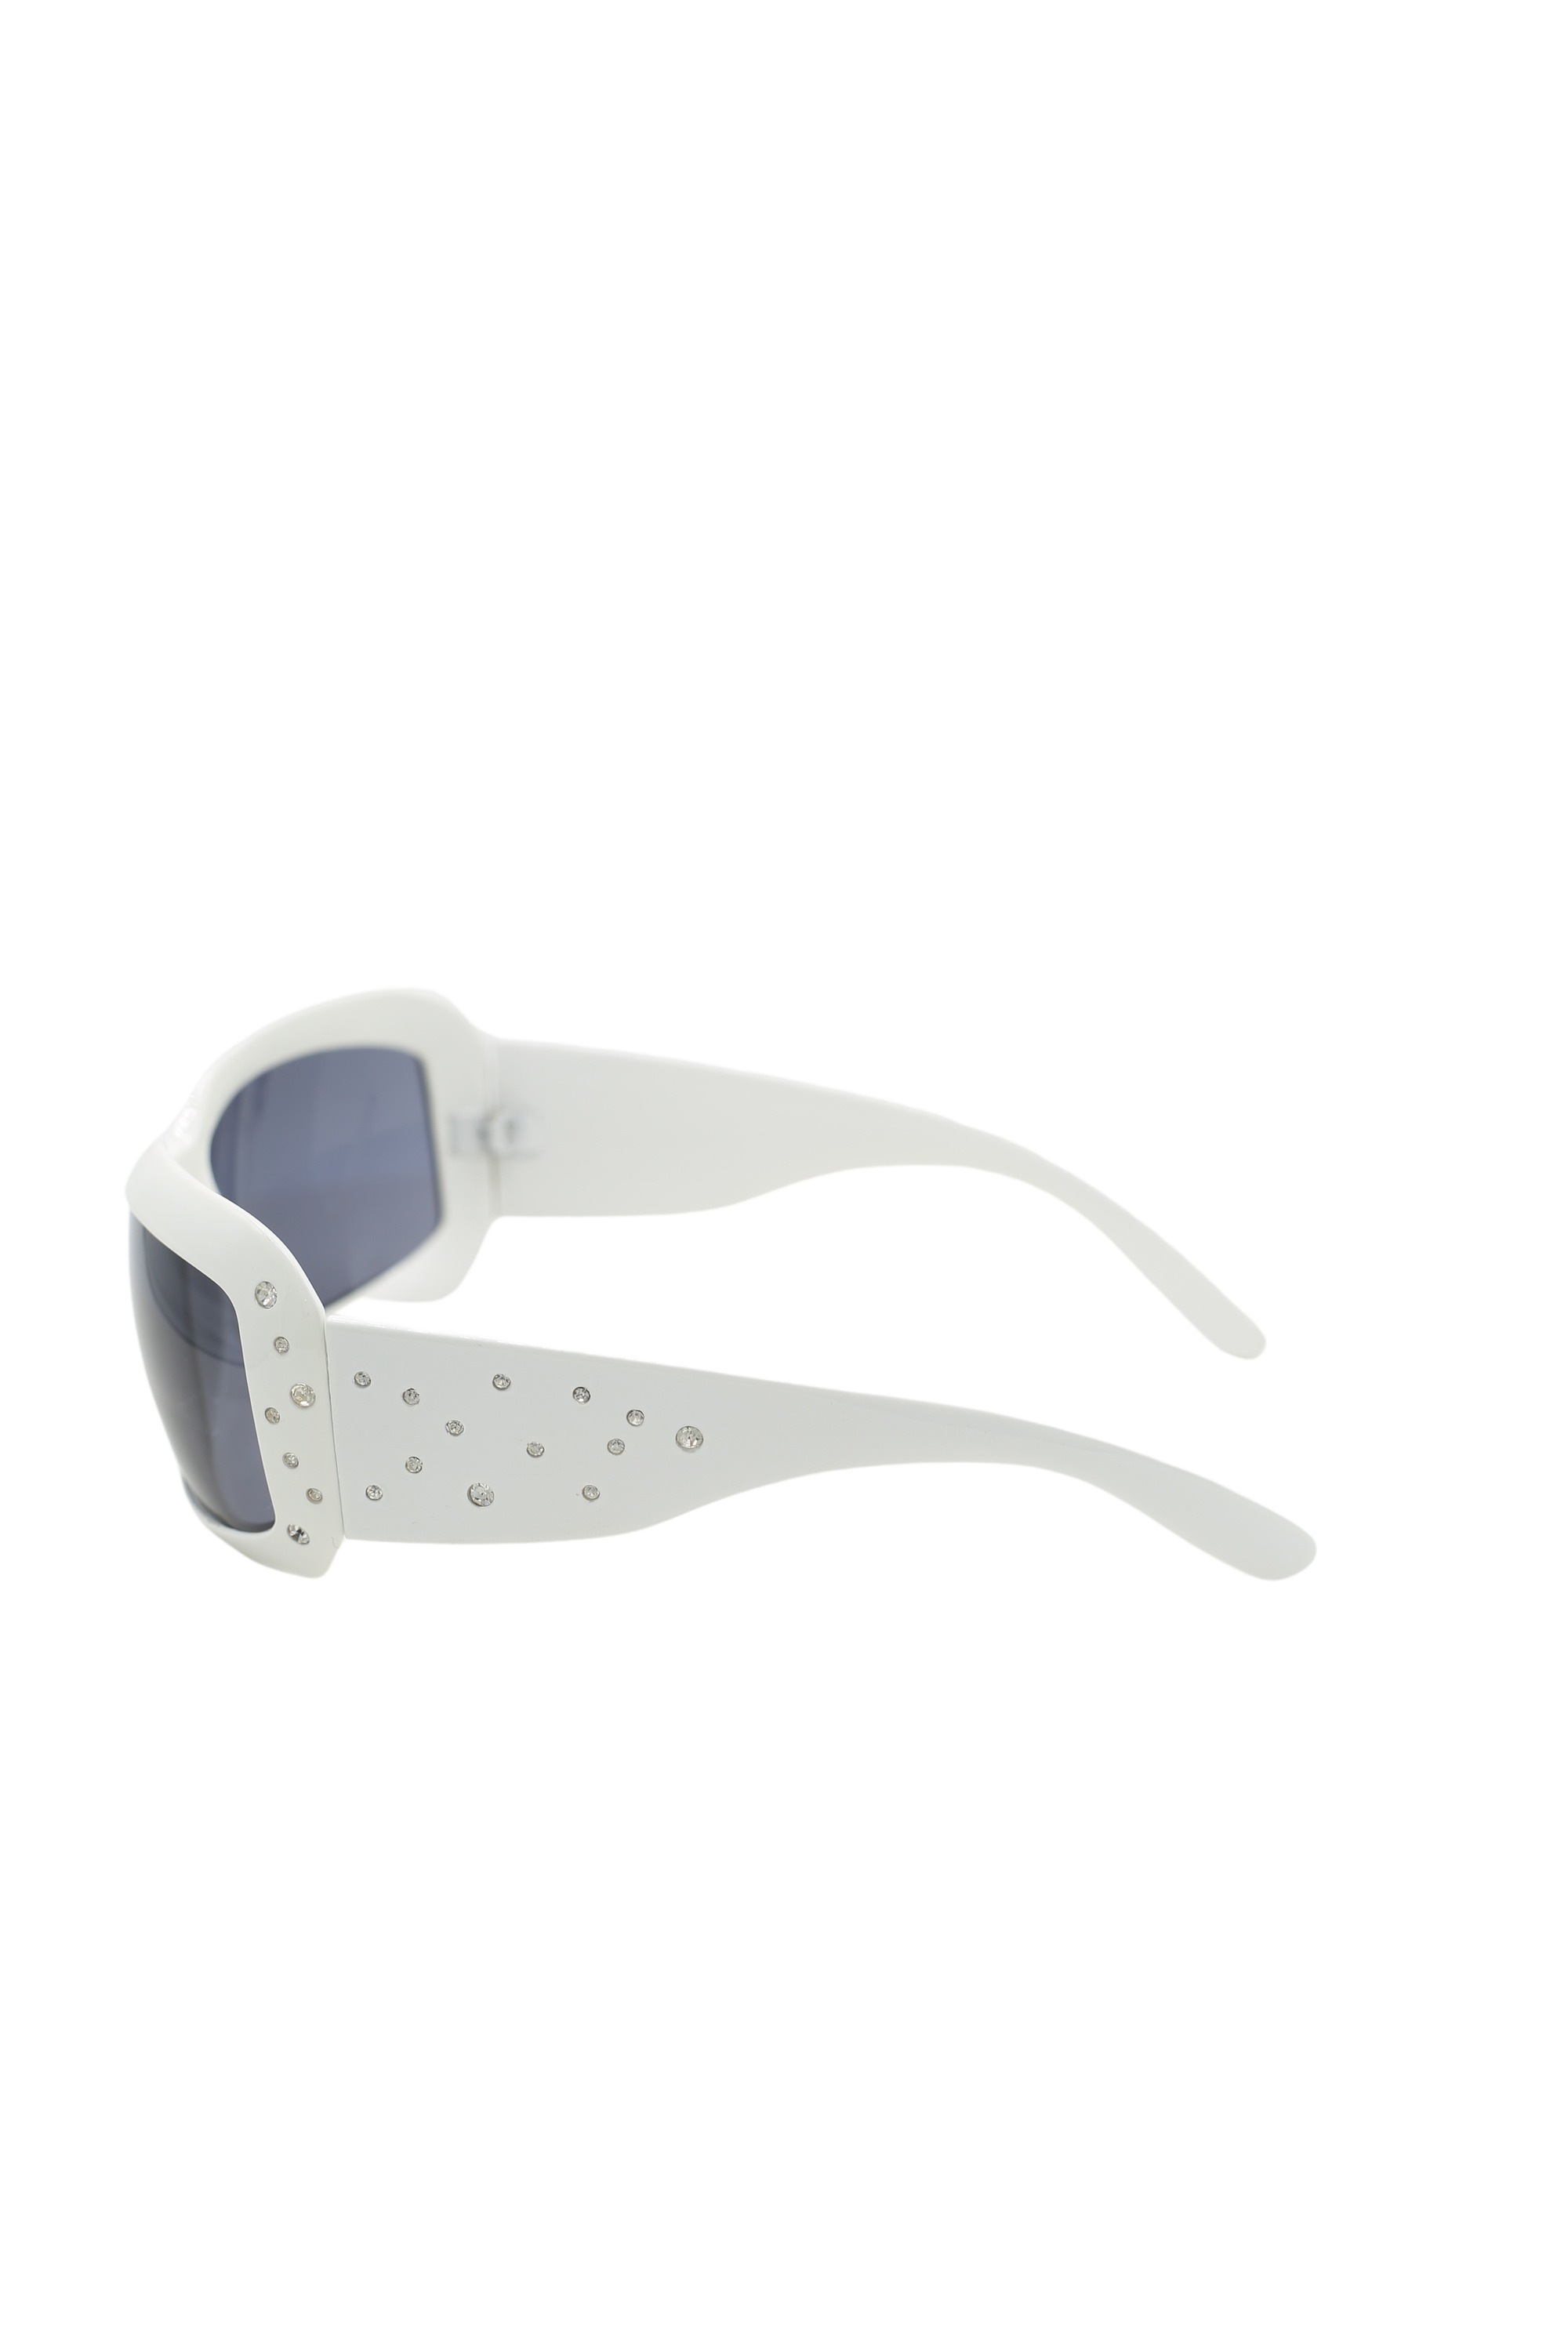 COLLEZIONE ALESSANDRO Sonnenbrille »Snowflake«, mit kleinen Steinchen